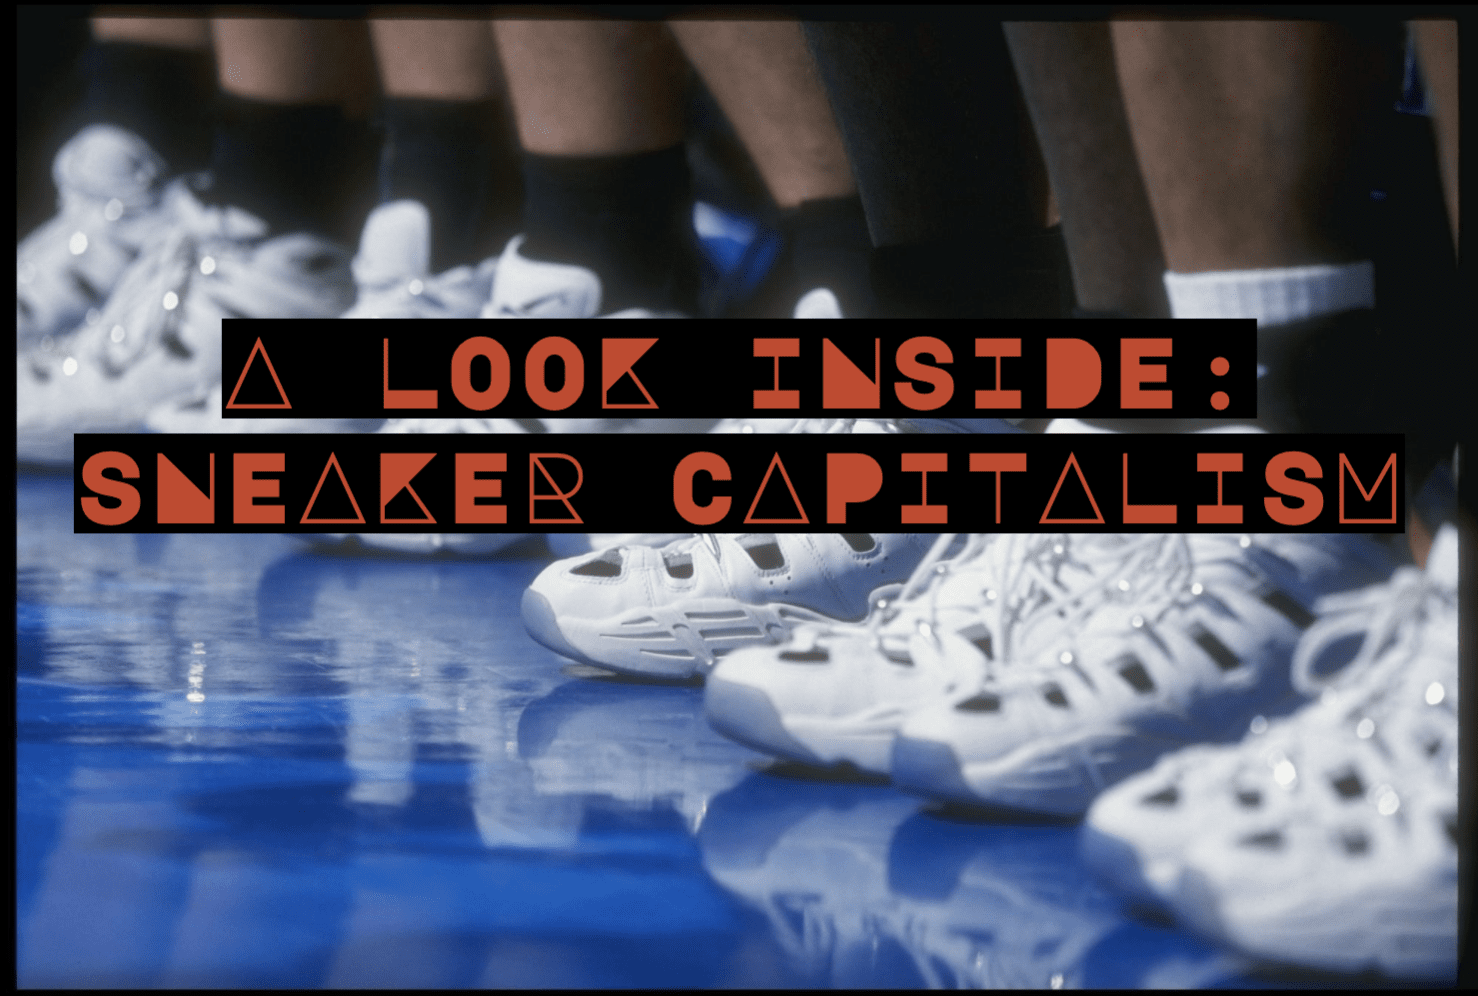 A Look Inside Sneaker Capitalism